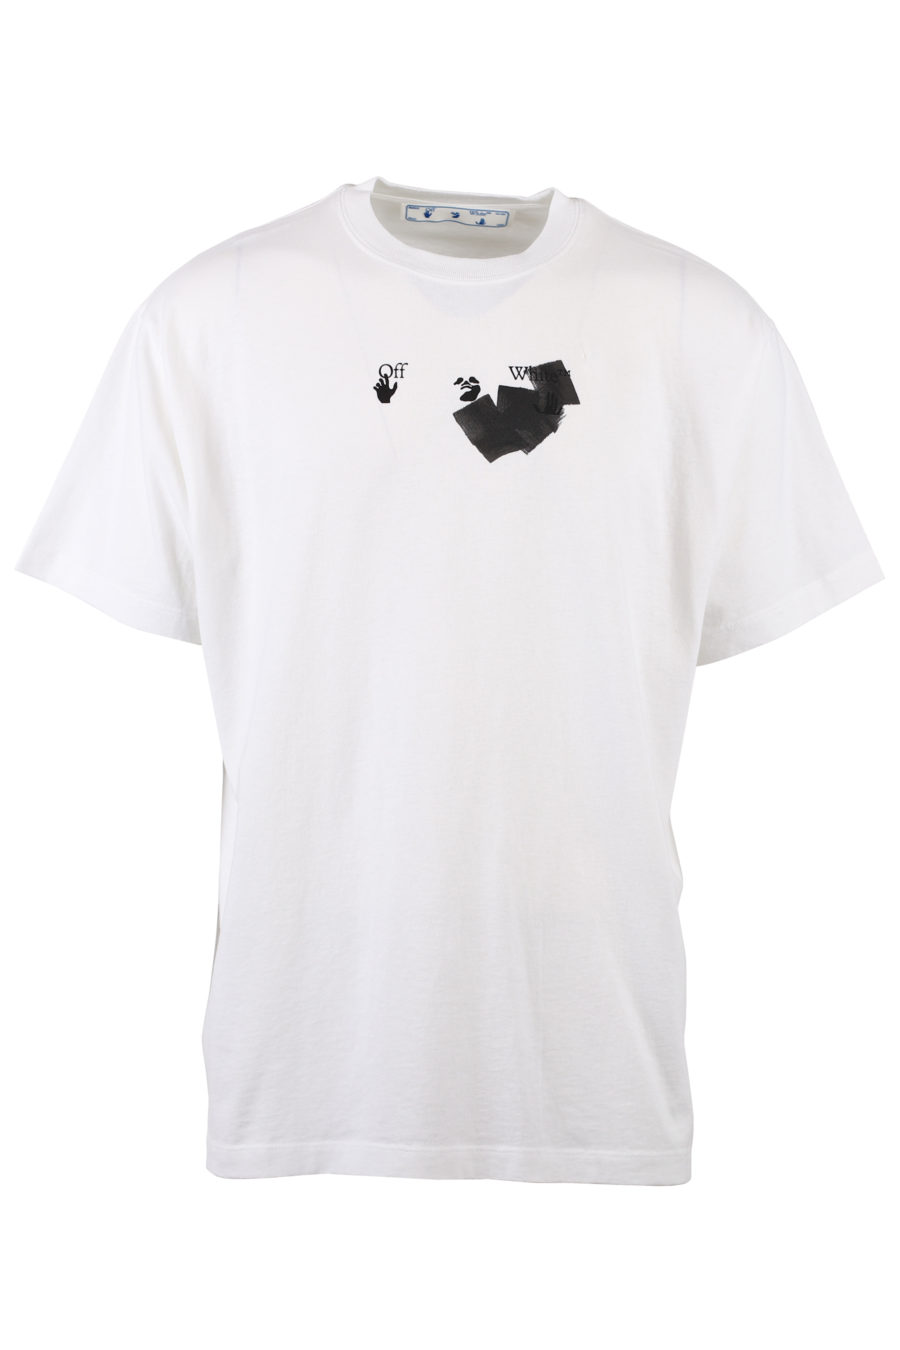 Camiseta blanca con logo efecto rotulador - IMG 1359